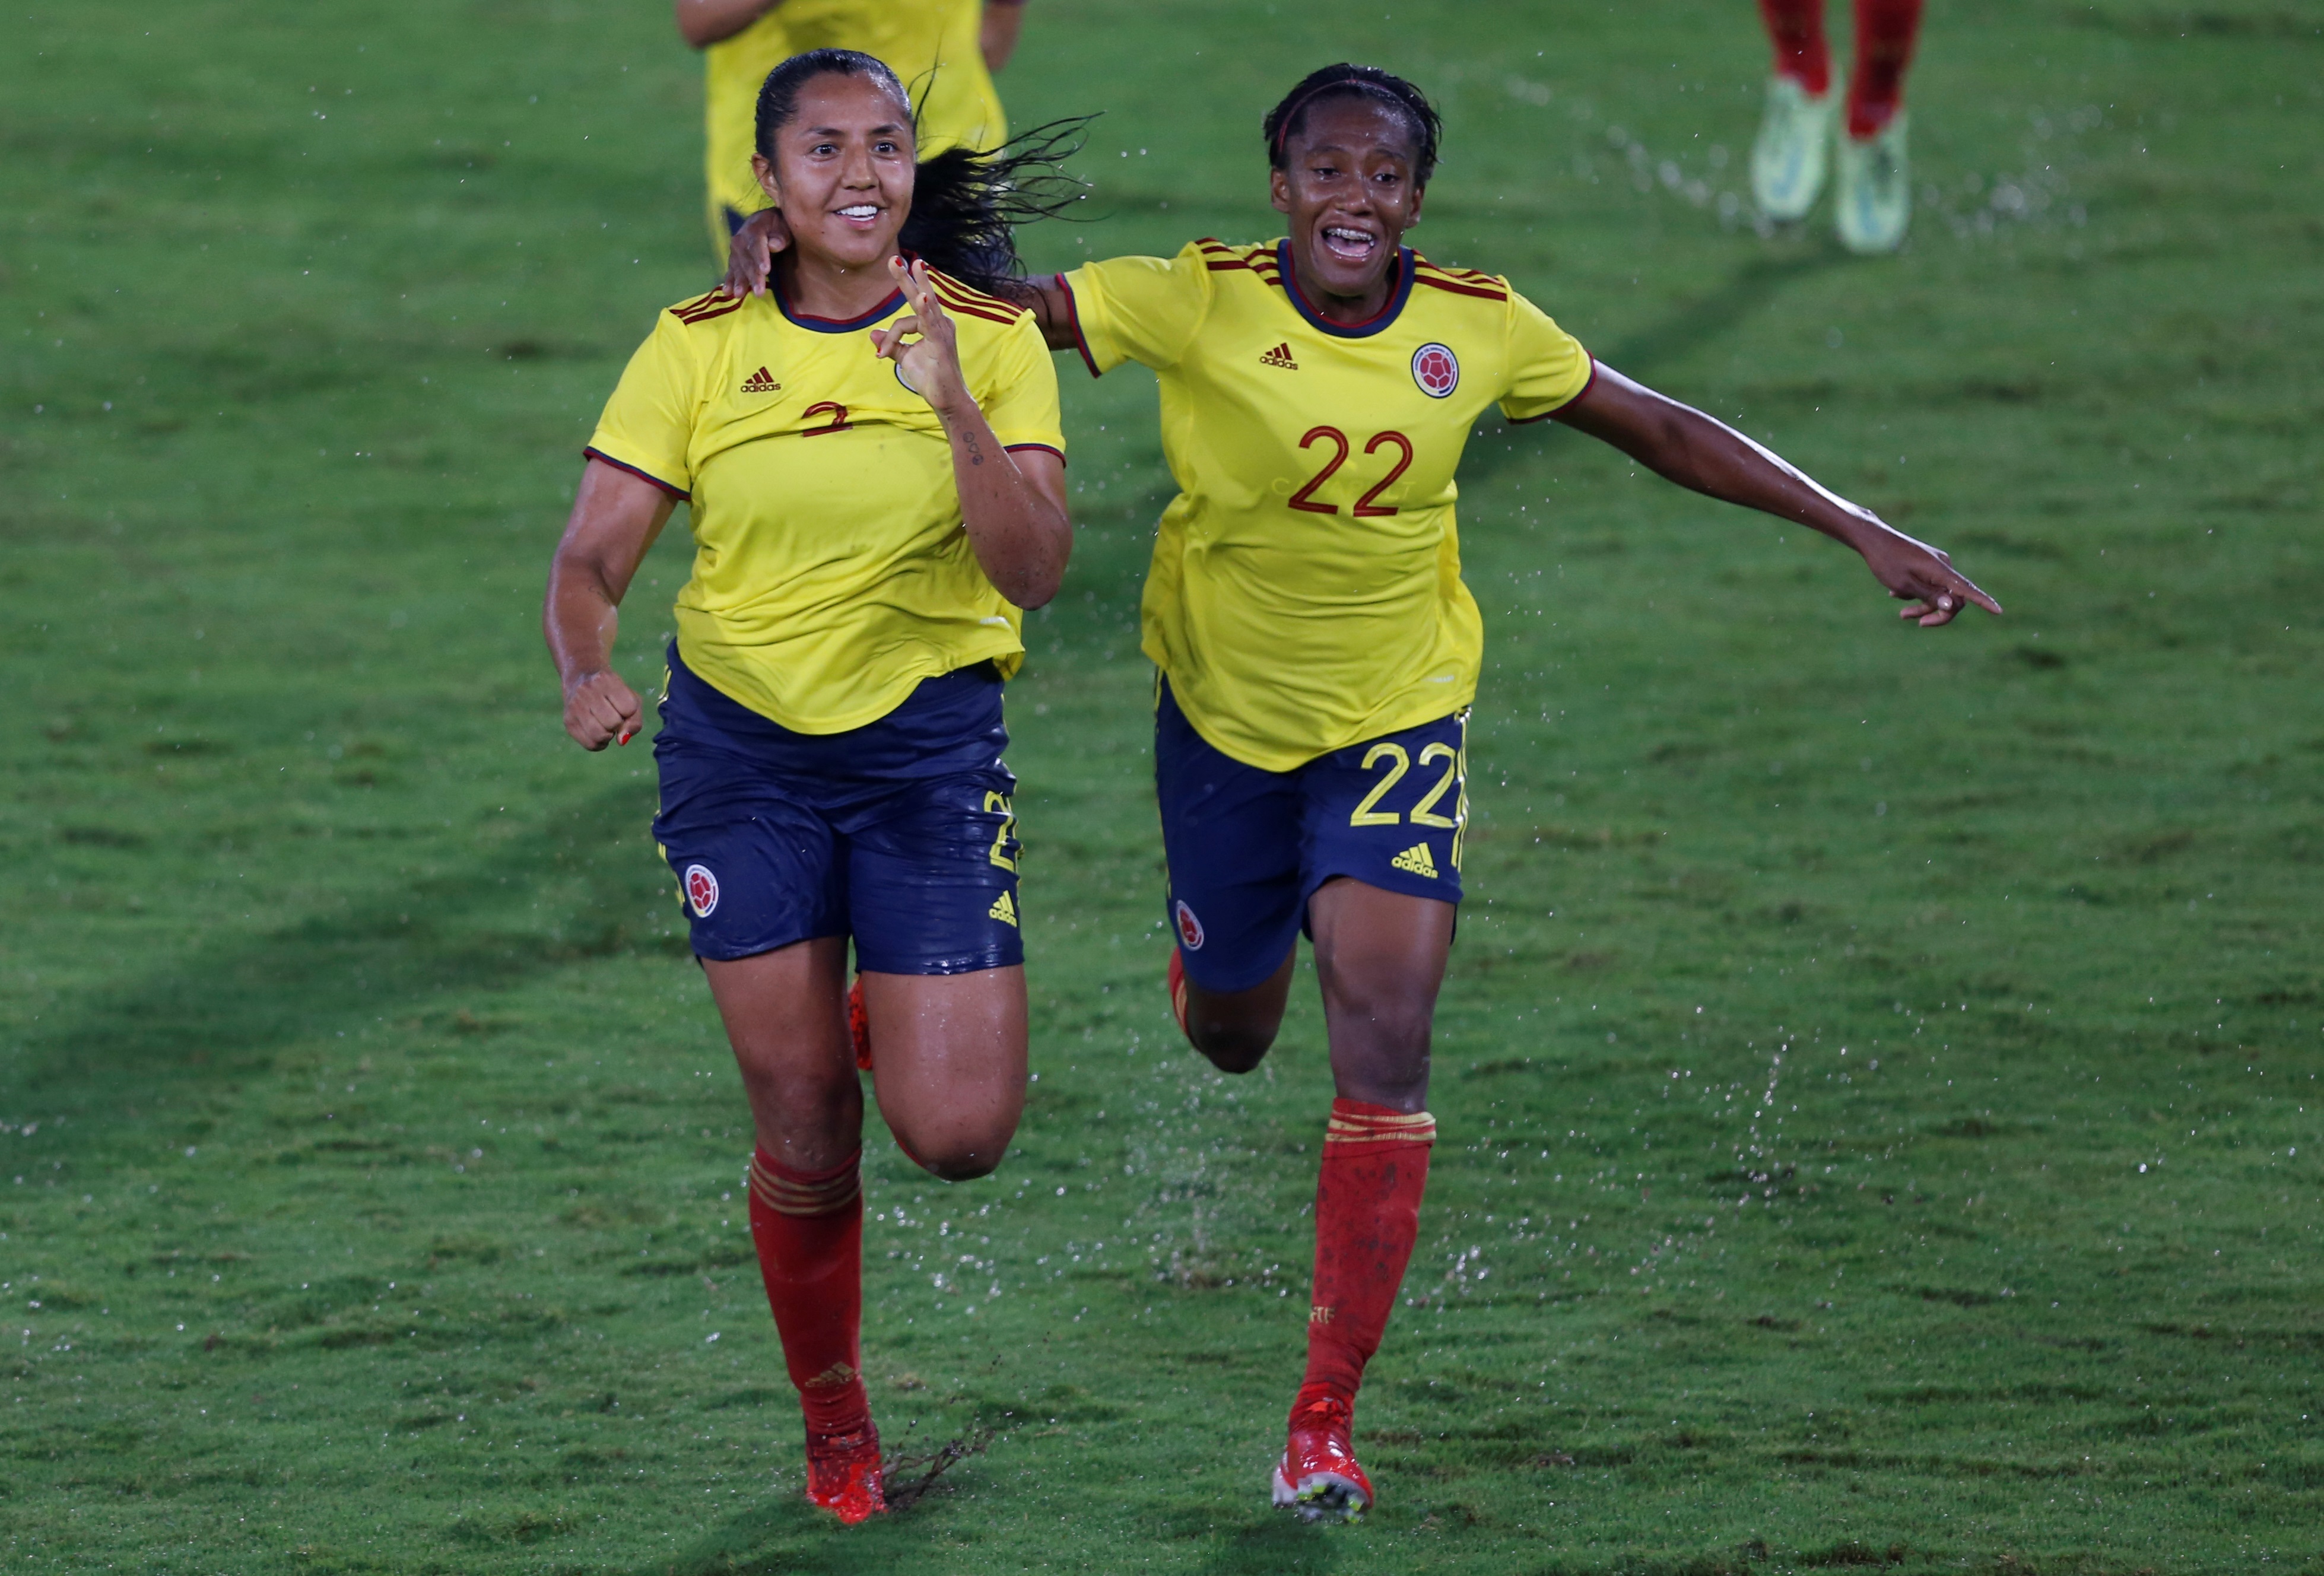 Estas las jugadoras convocadas a la selección Colombia los partidos amistosos contra Venezuela - Infobae